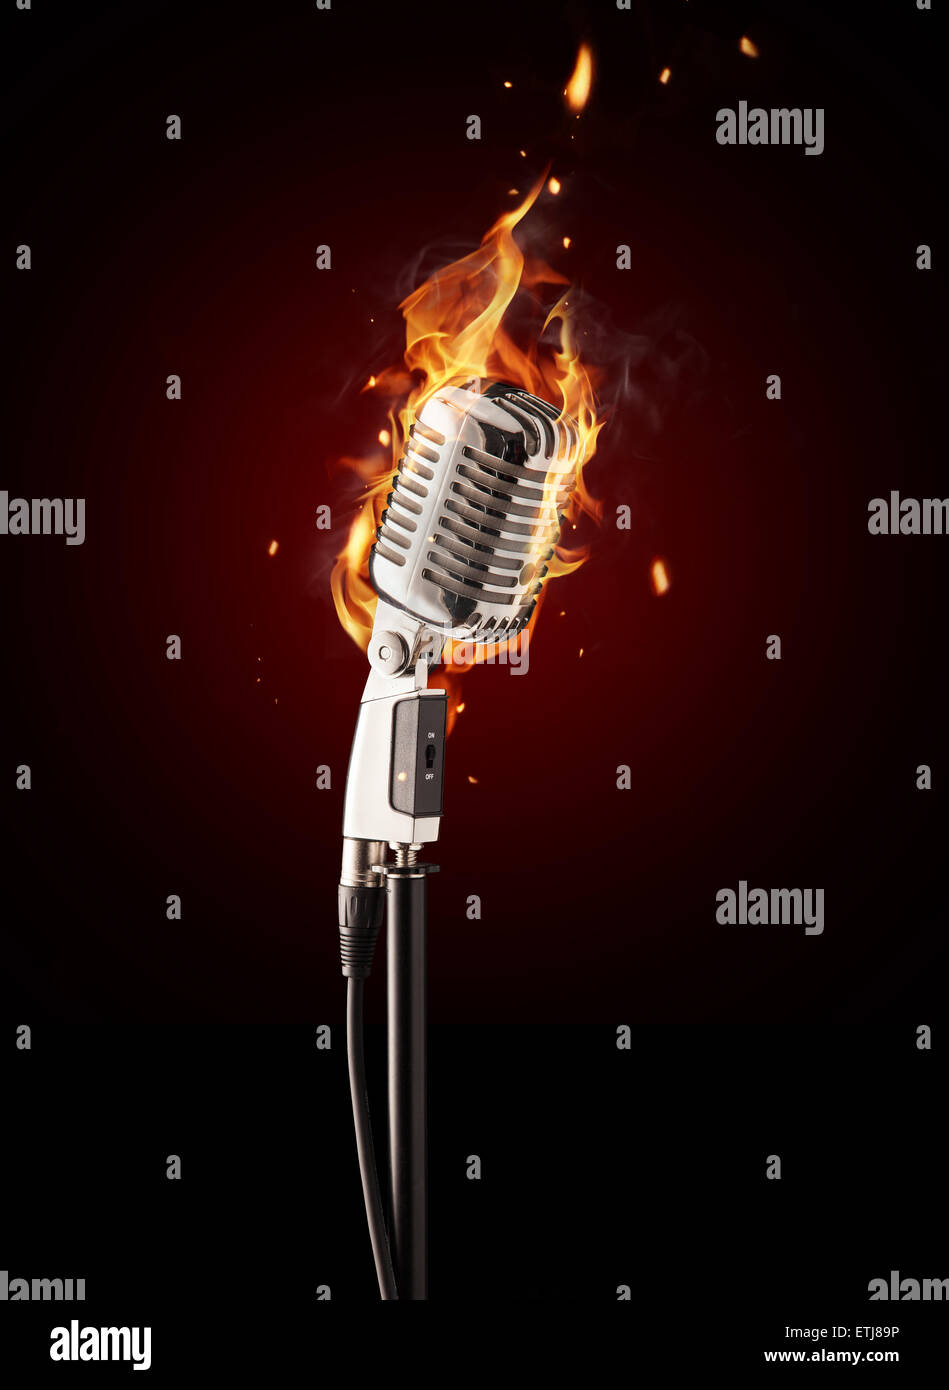 Retro singing microphone burning on black background Stock Photo